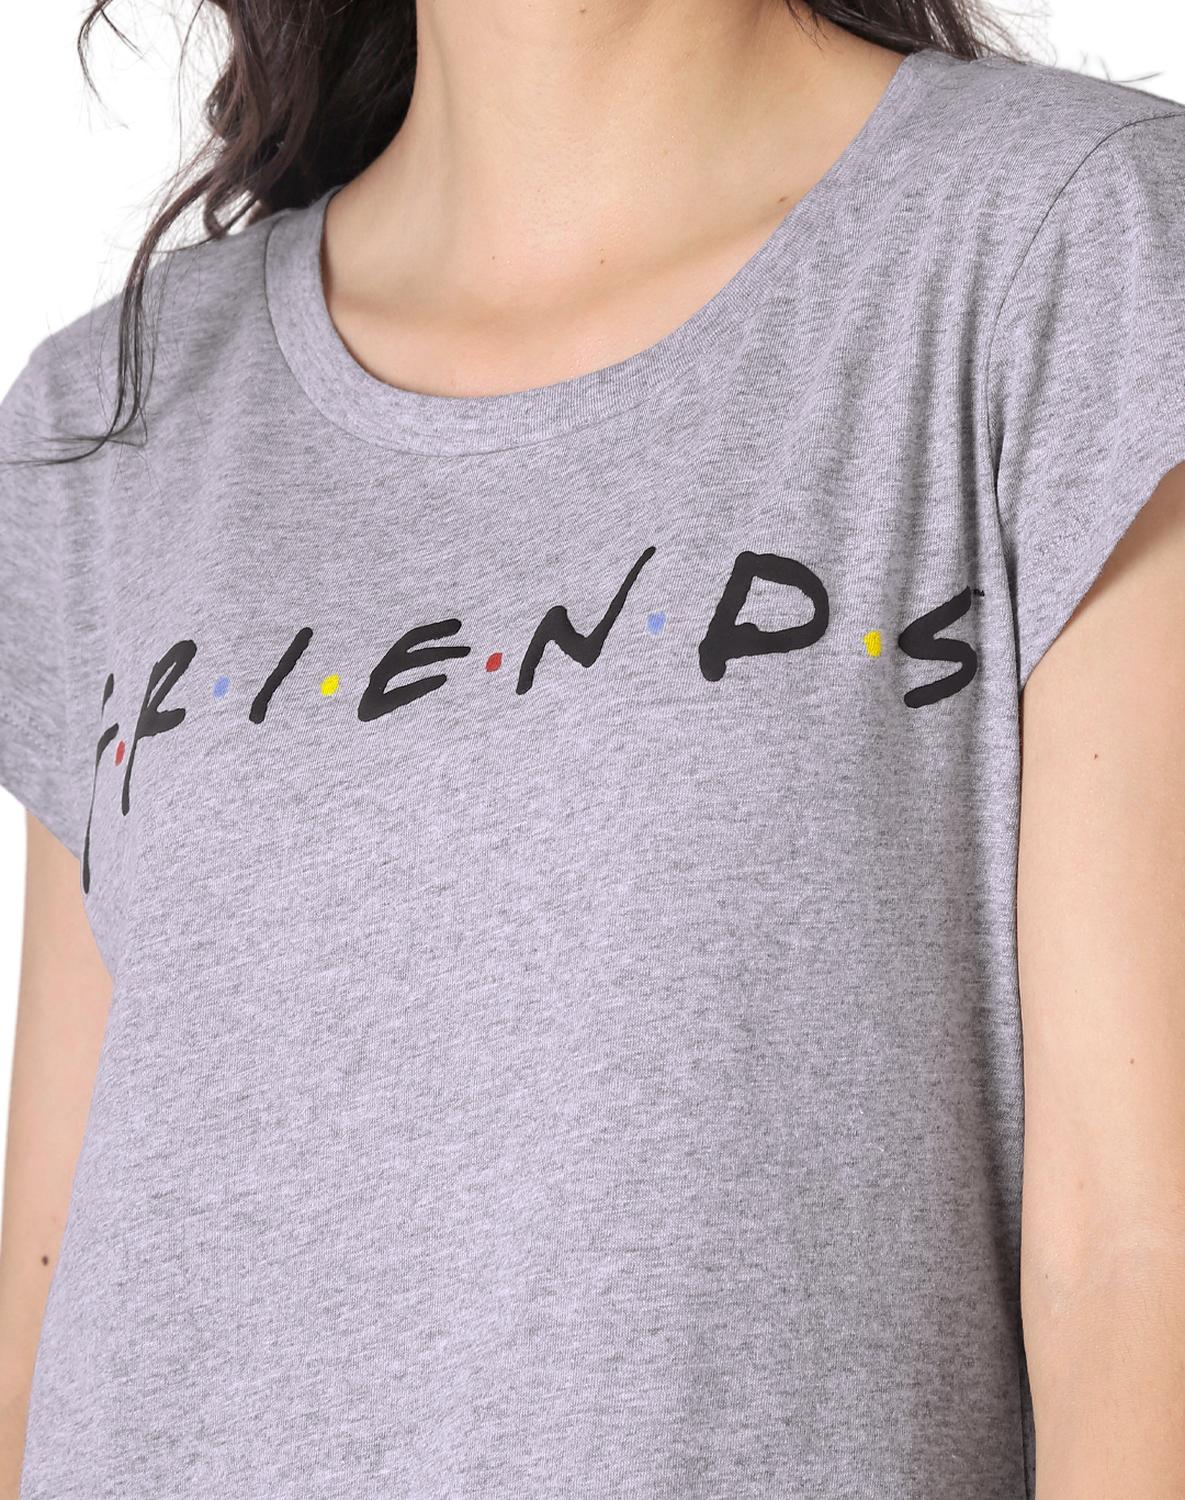 Playera Moda Camiseta Mujer Gris Friends 58204807